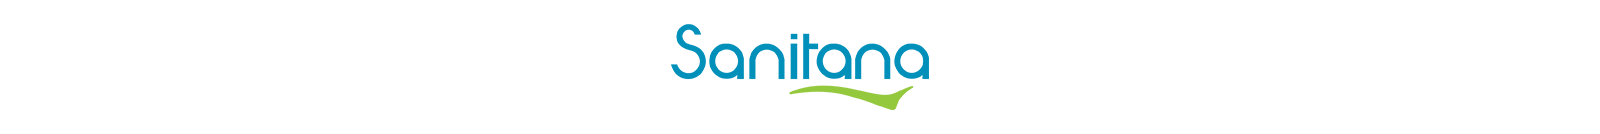 Logo-Sanitana-trasp-1600x134.png